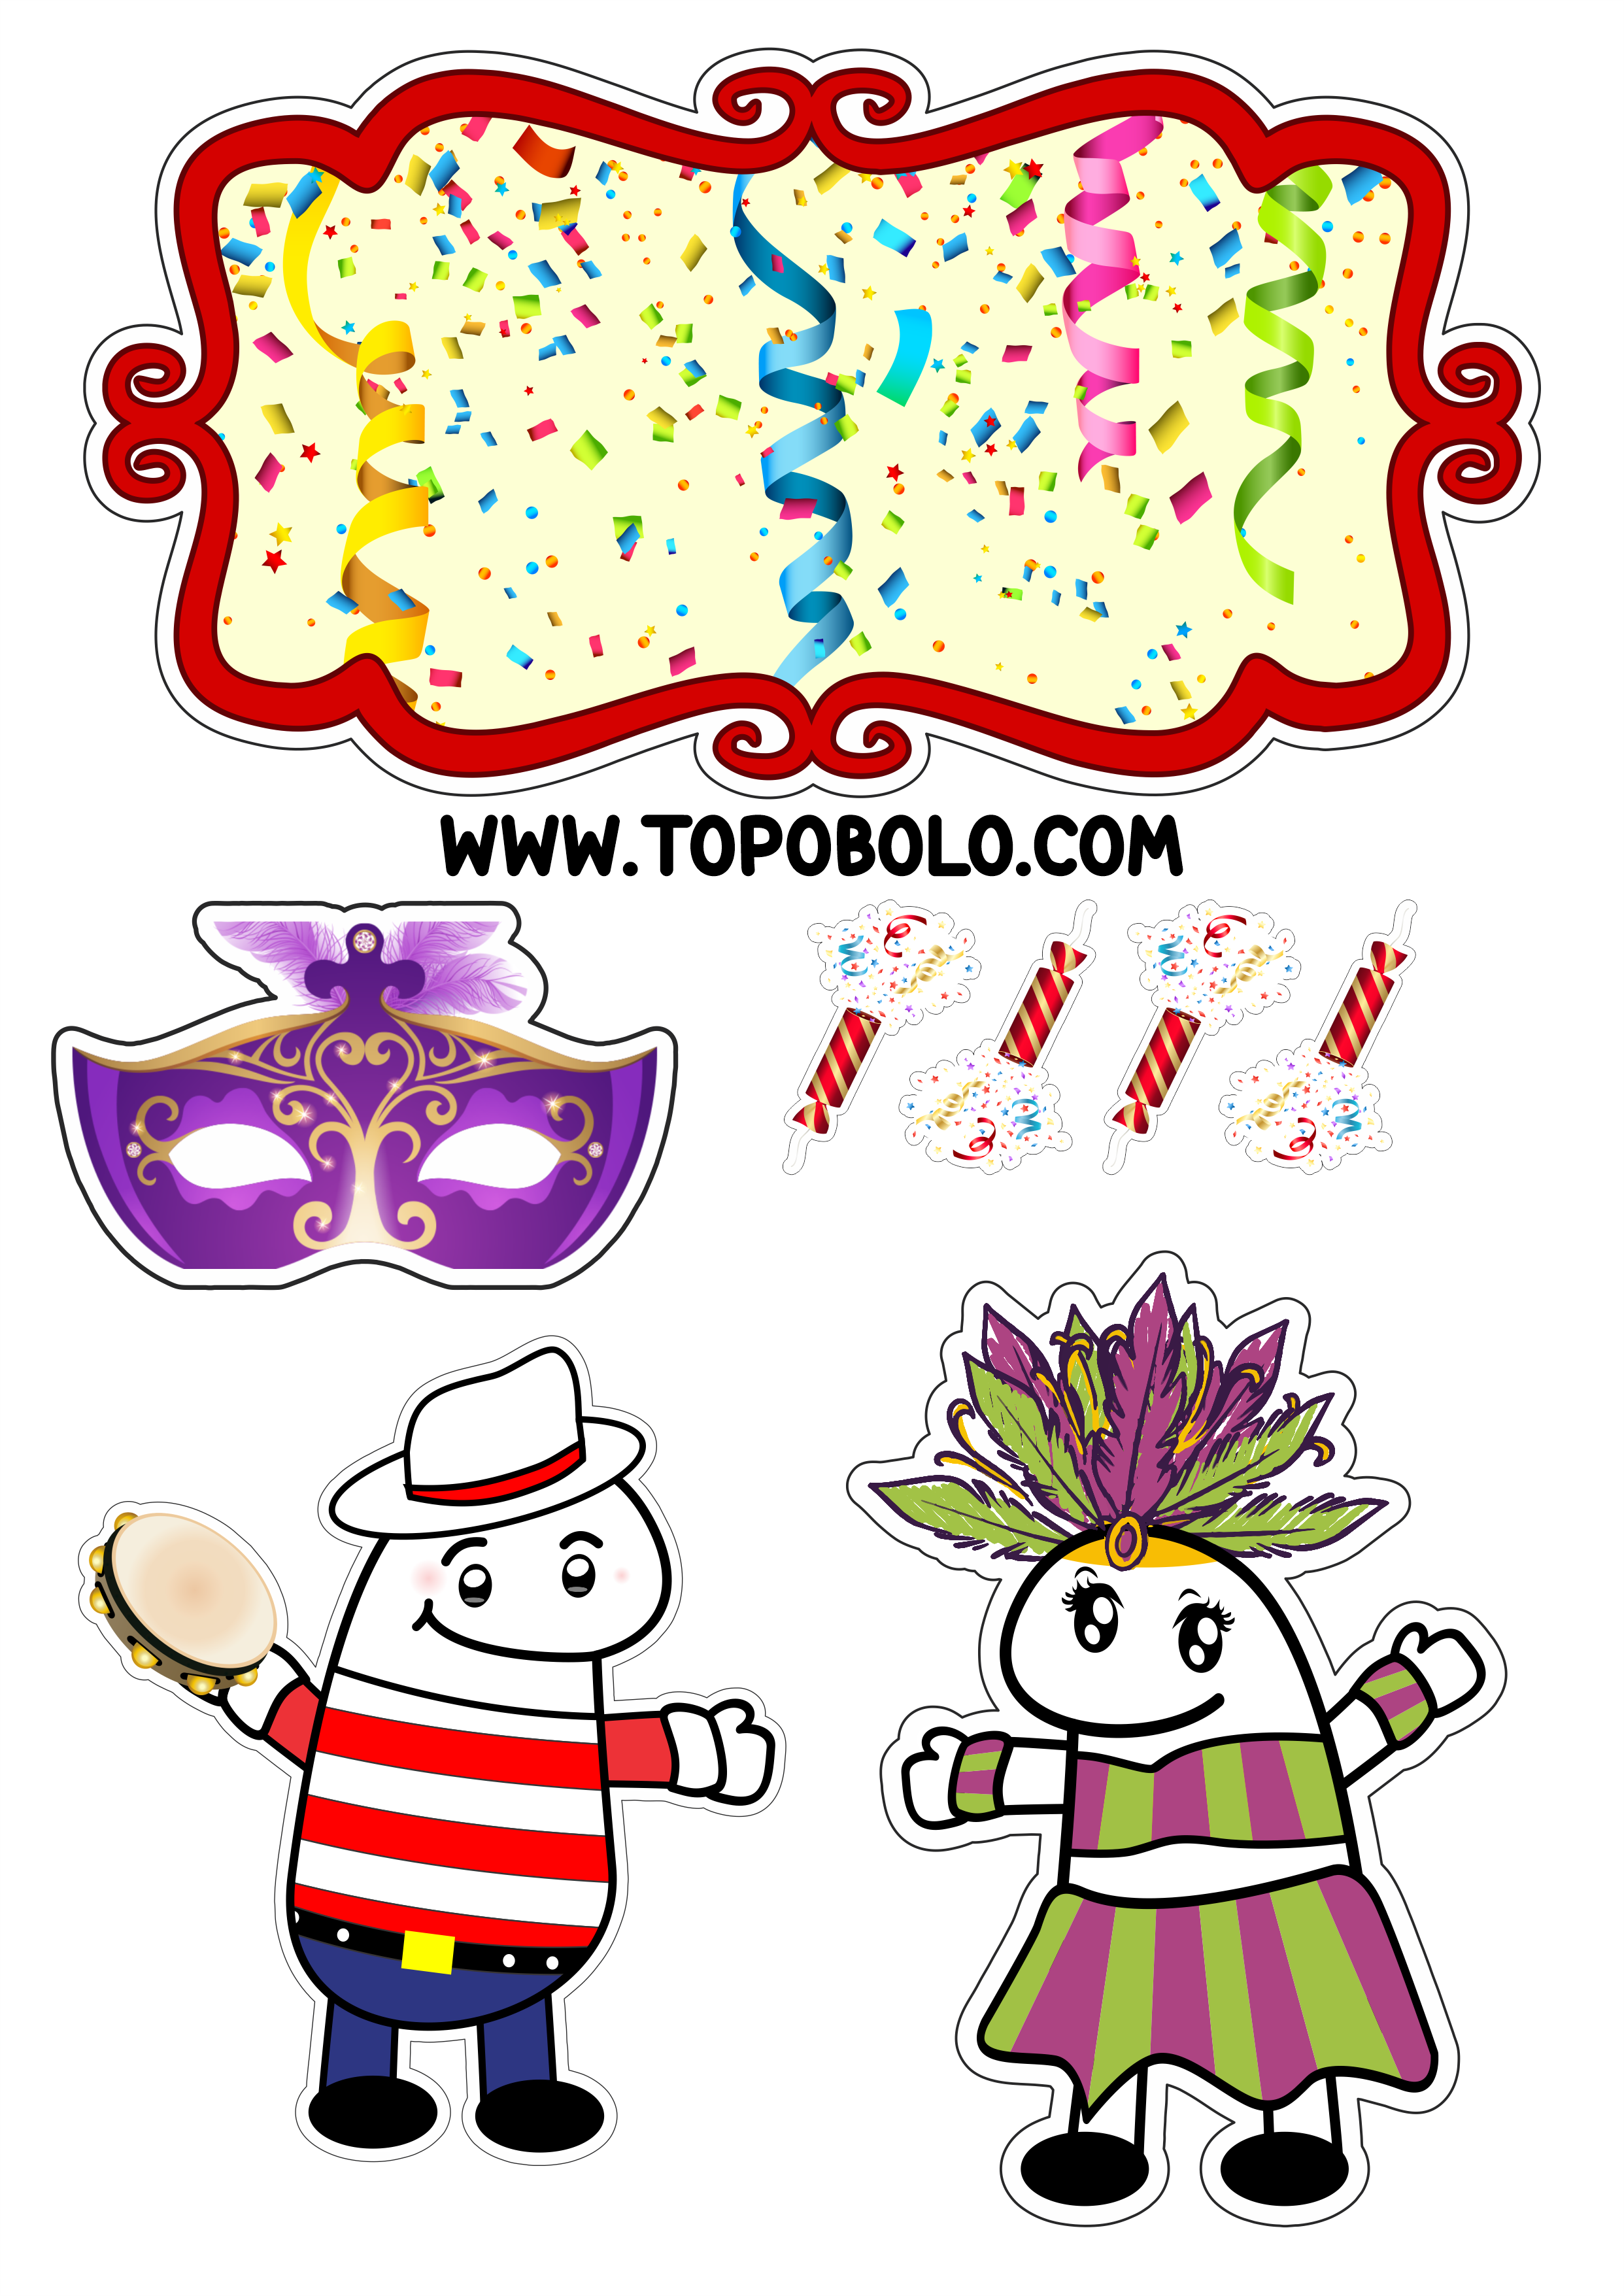 Carnaval topo de bolo flork of cows baile de máscaras figurinhas engraçadas folia festa decoração png